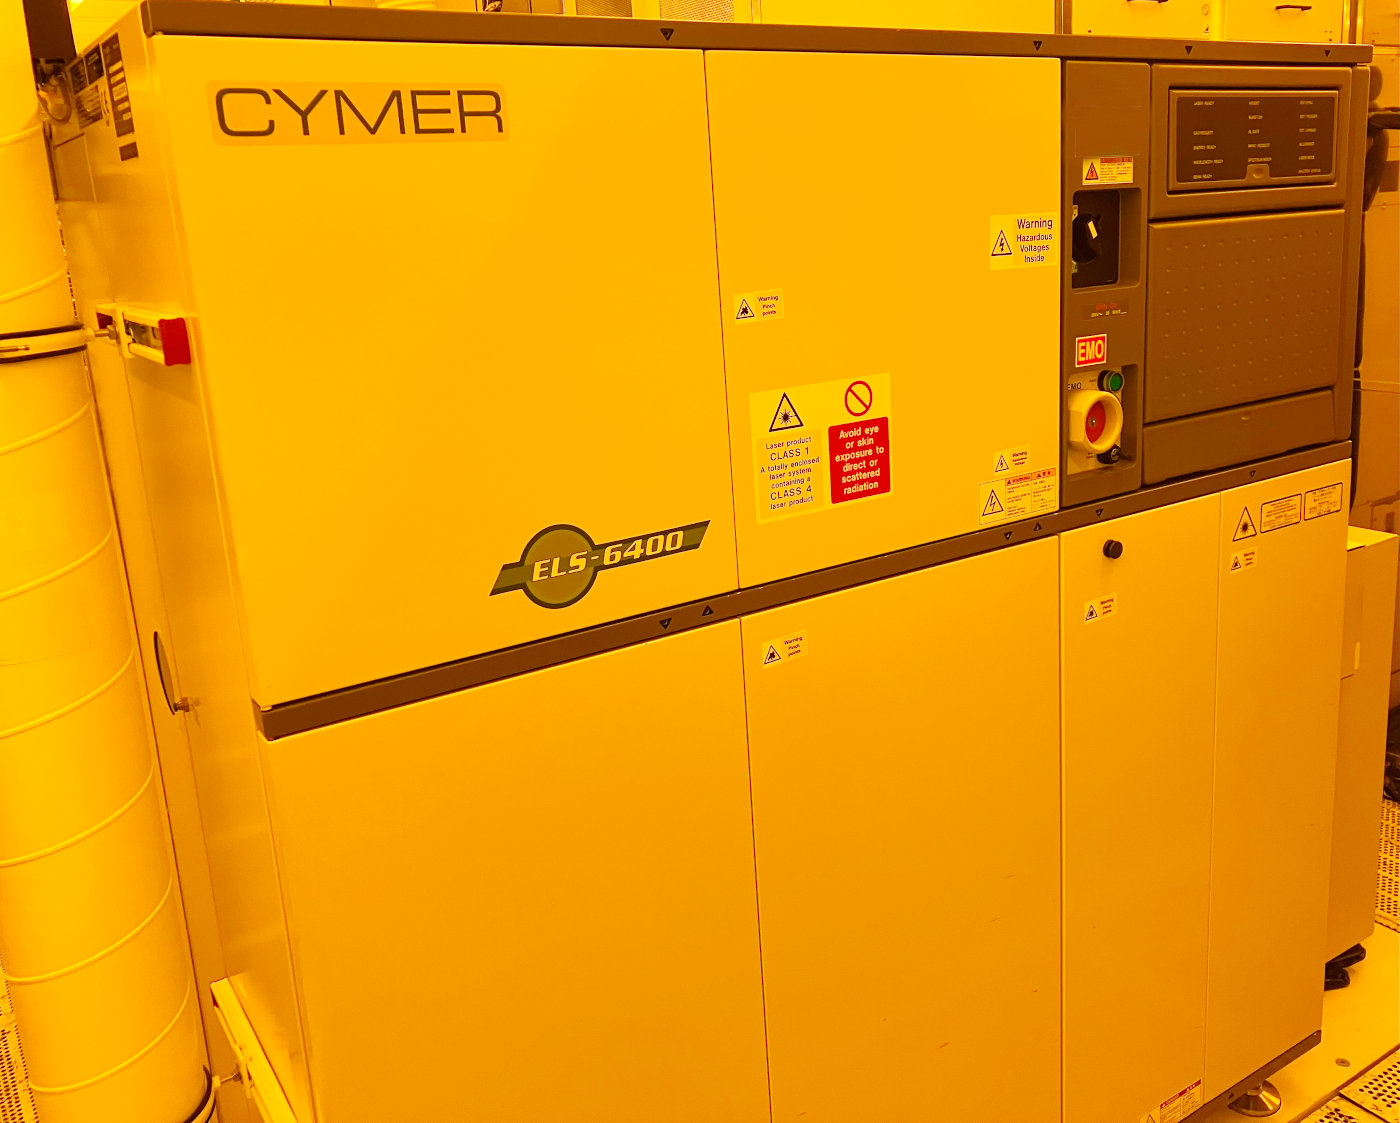 Cymer ELS 6300 